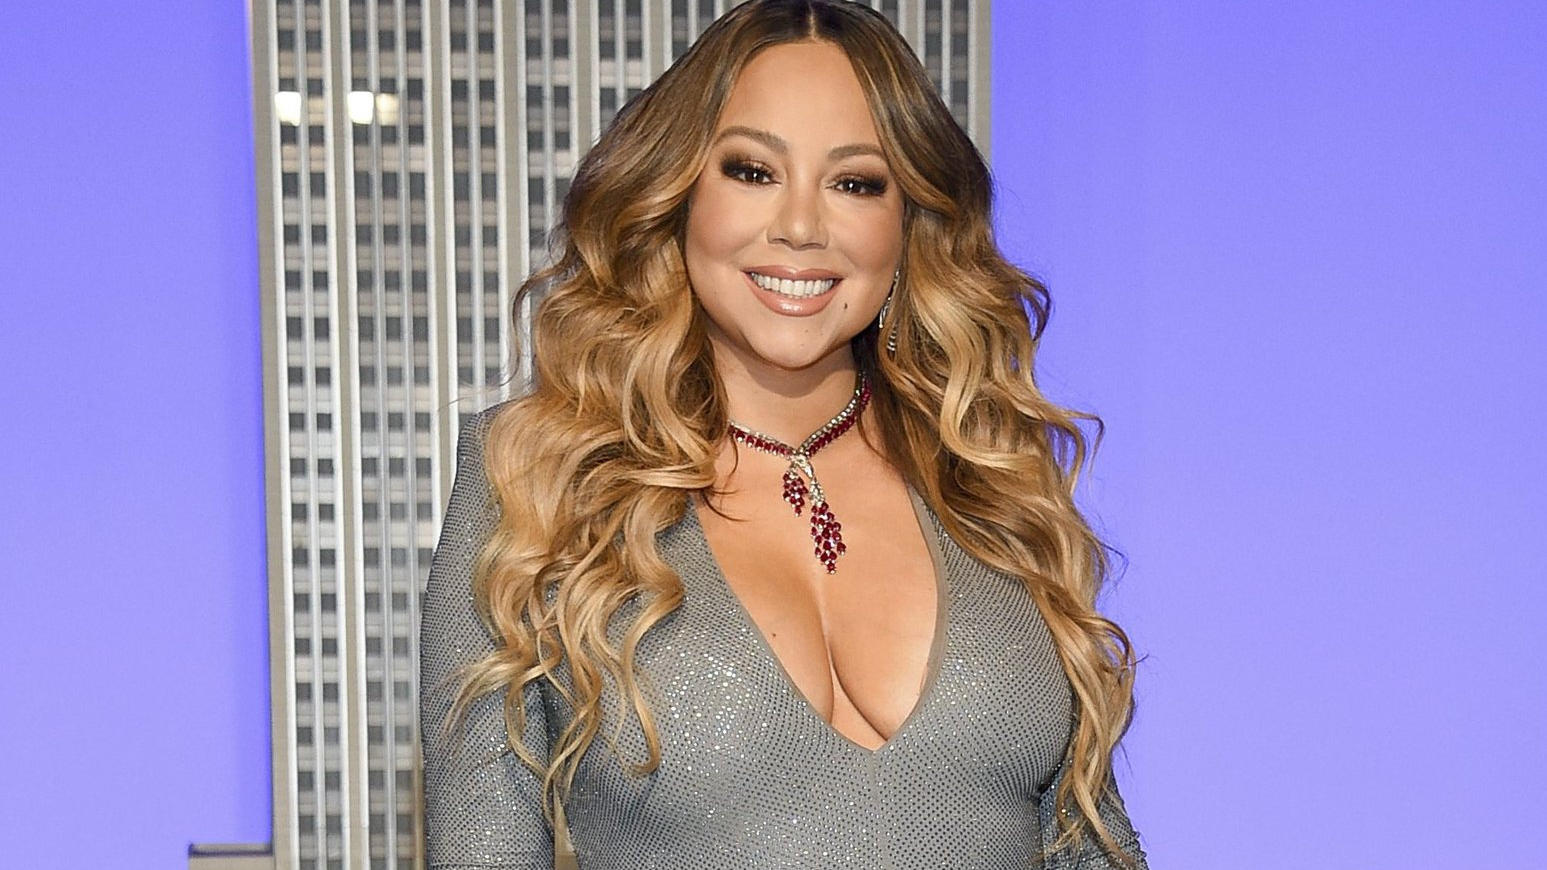 ARCHIV - 17.12.2019, USA, New York: Mariah Carey, Sängerin aus den USA, nimmt anlässlich des 25. Jahrestages der Veröffentlichung ihrer Single «All I Want For Christmas Is You» an der feierlichen Beleuchtung des Empire State Buildings teil. (zu dpa «